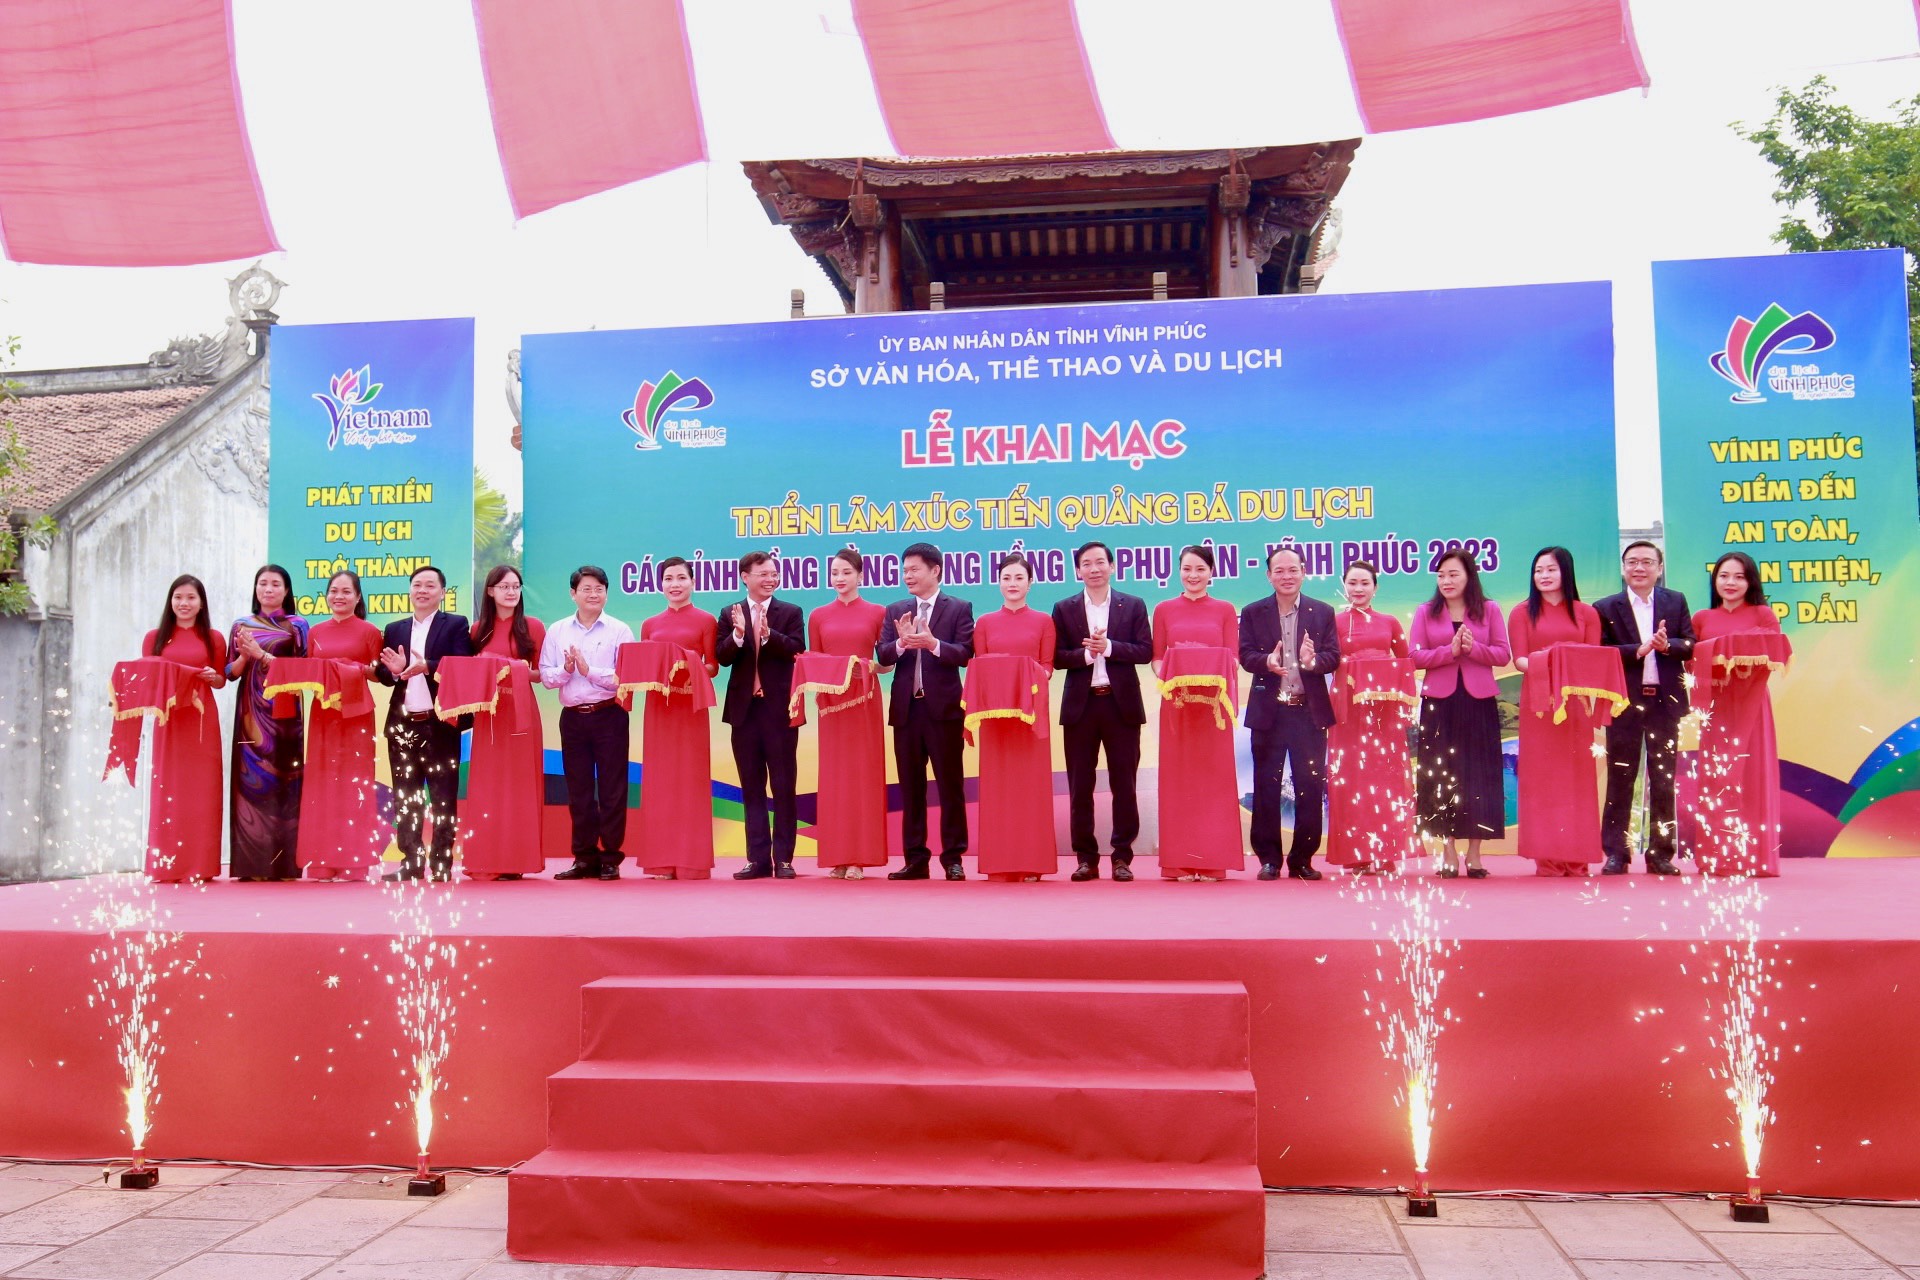 Quảng bá du lịch Thái Nguyên tại Triển lãm xúc tiến quảng bá  du lịch các tỉnh Đồng bằng sông Hồng và phụ cận - Vĩnh Phúc 2023